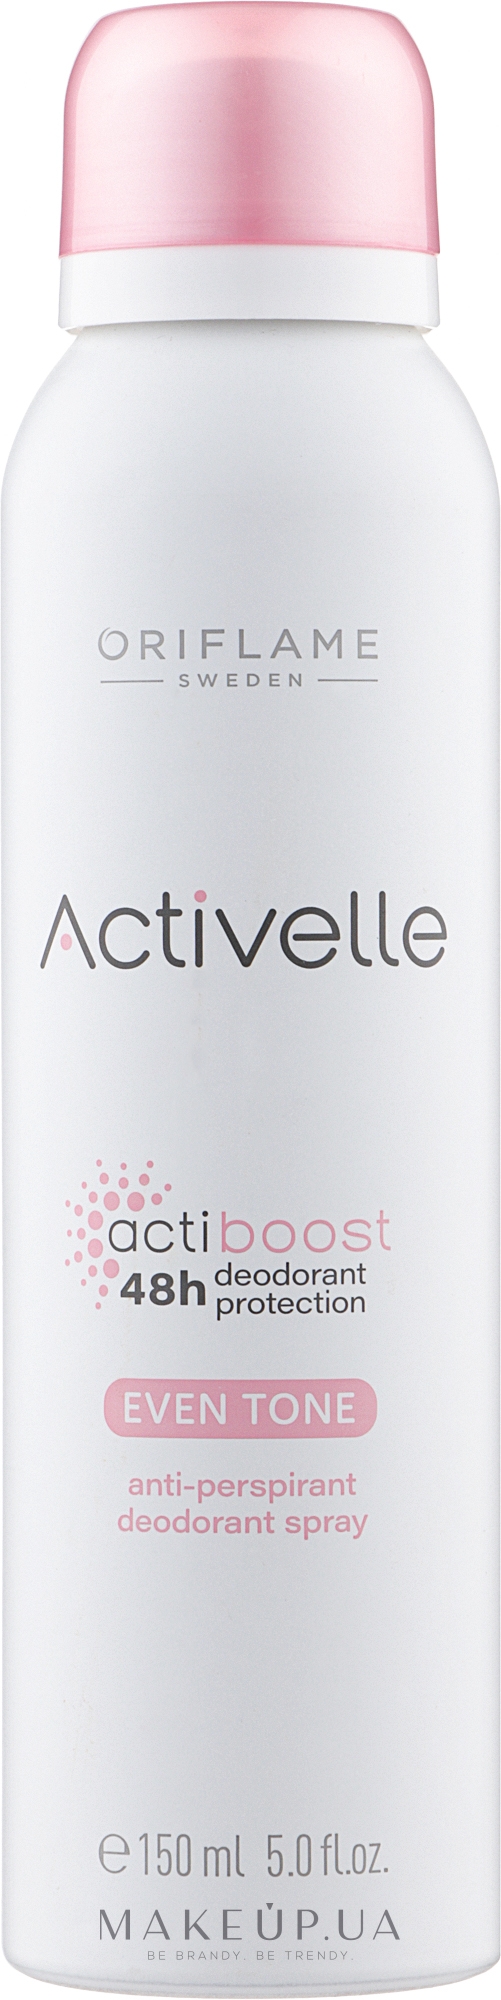 Спрей дезодорант-антиперспирант c выравнивающим тон кожи эффектом - Oriflame Activelle Actiboost Even Tone — фото 150ml